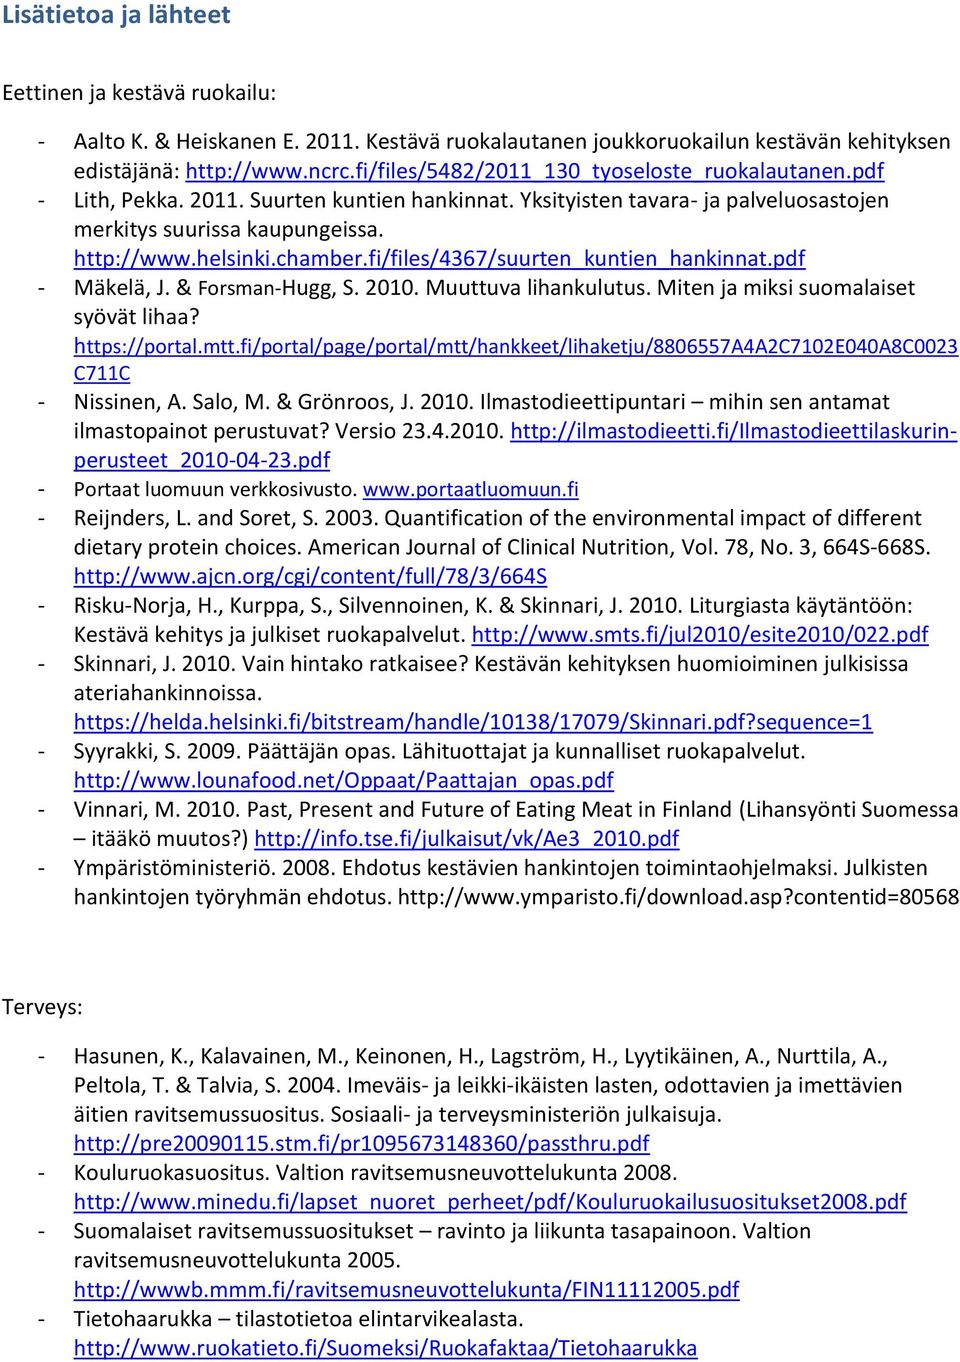 fi/files/4367/suurten_kuntien_hankinnat.pdf - Mäkelä, J. & Forsman-Hugg, S. 2010. Muuttuva lihankulutus. Miten ja miksi suomalaiset syövät lihaa? https://portal.mtt.